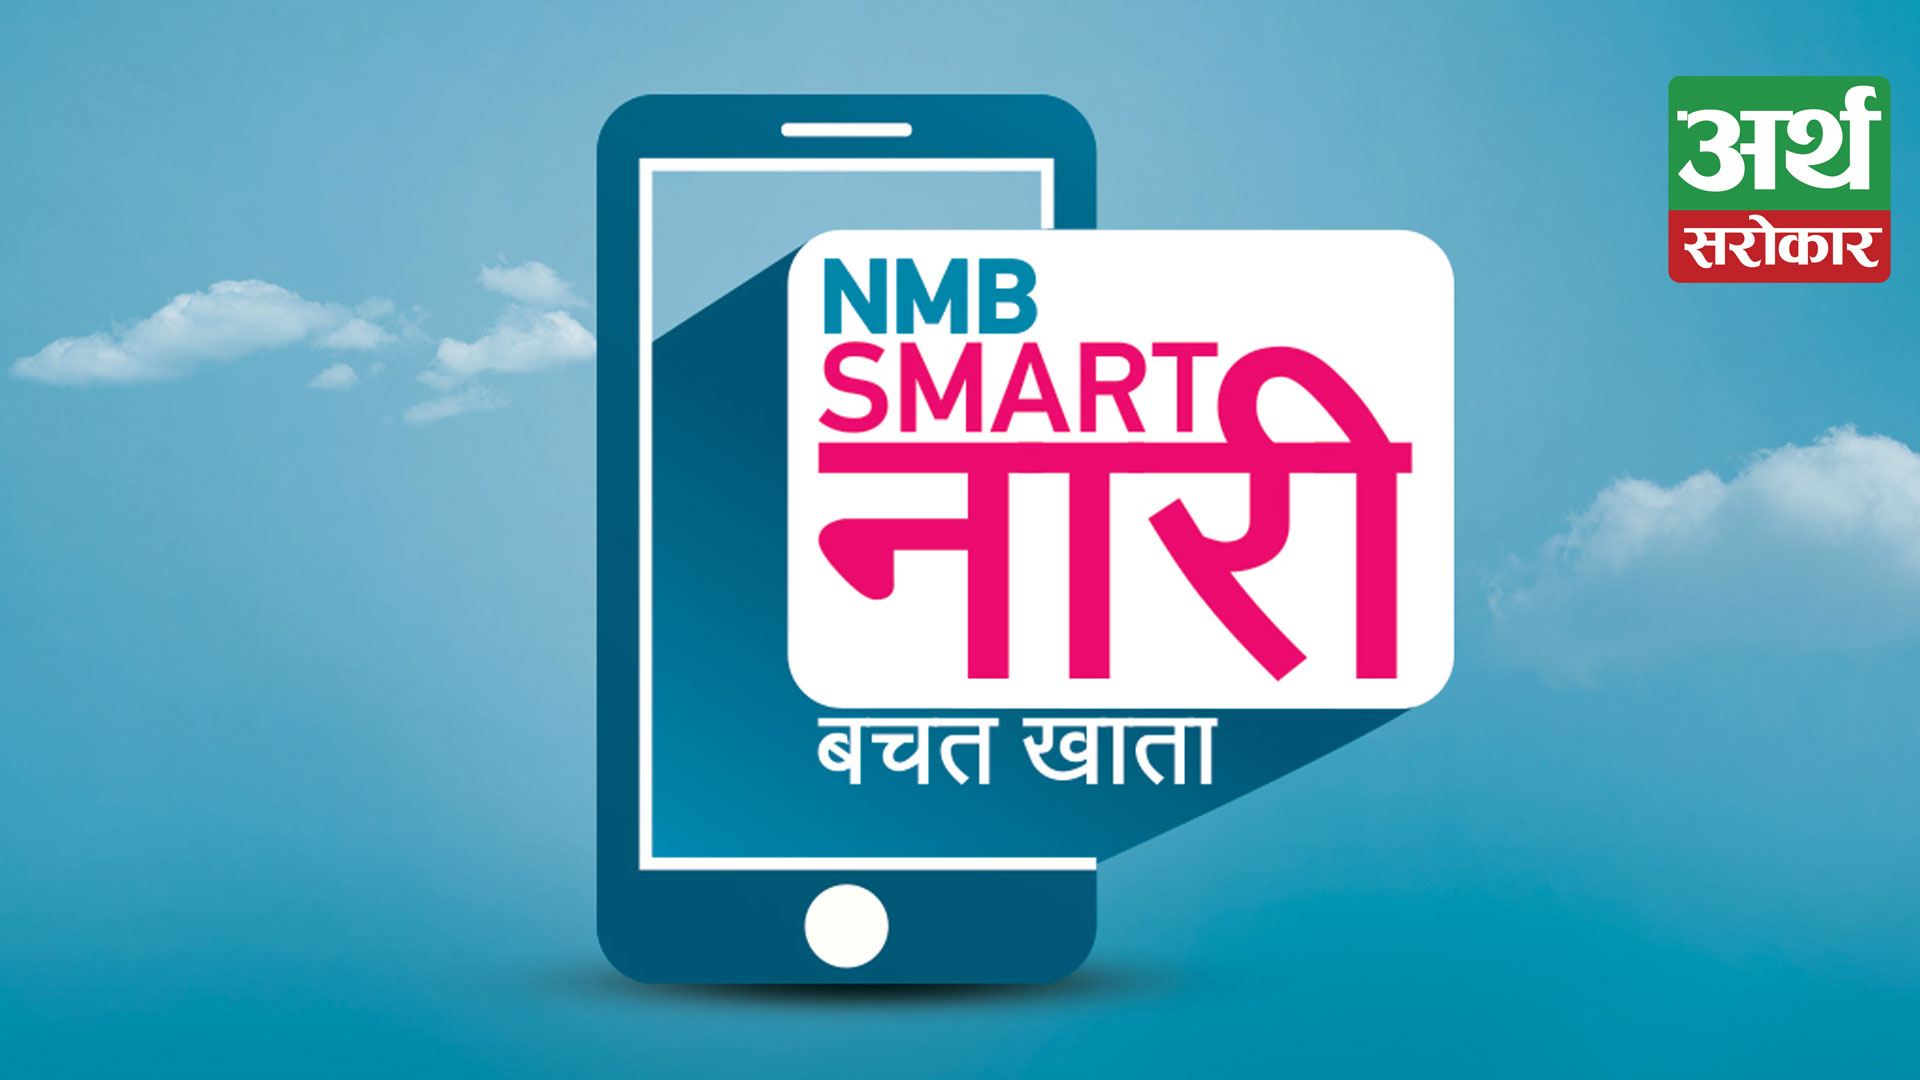 NMB Bank launches NMB Smart Nari Bachat Khata